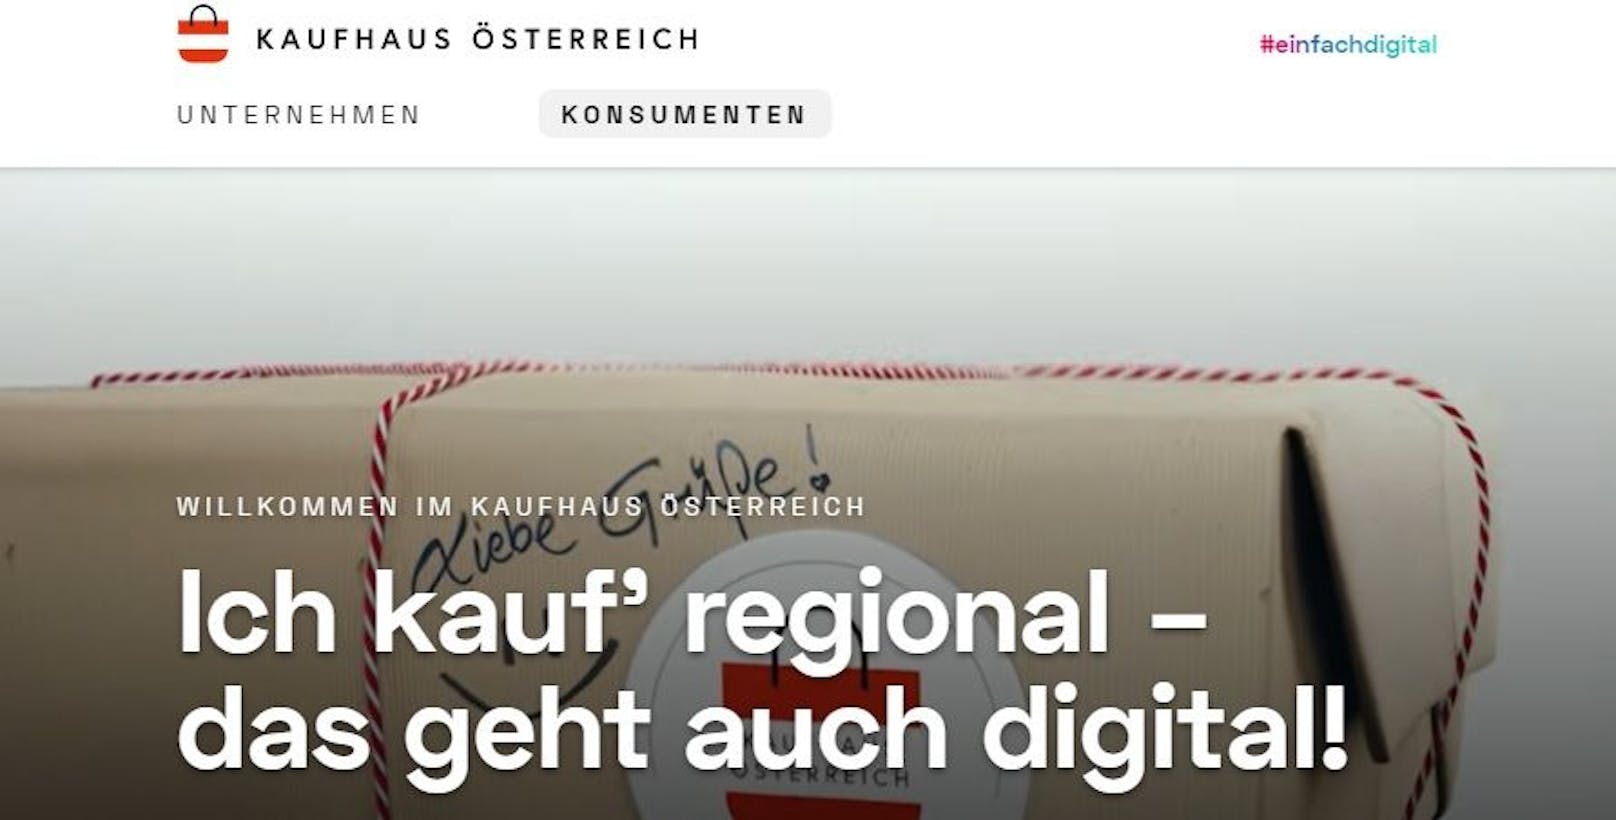 "Kauf regional, das geht auch digital - das ist das Motto des 'Kaufhaus Österreich'."